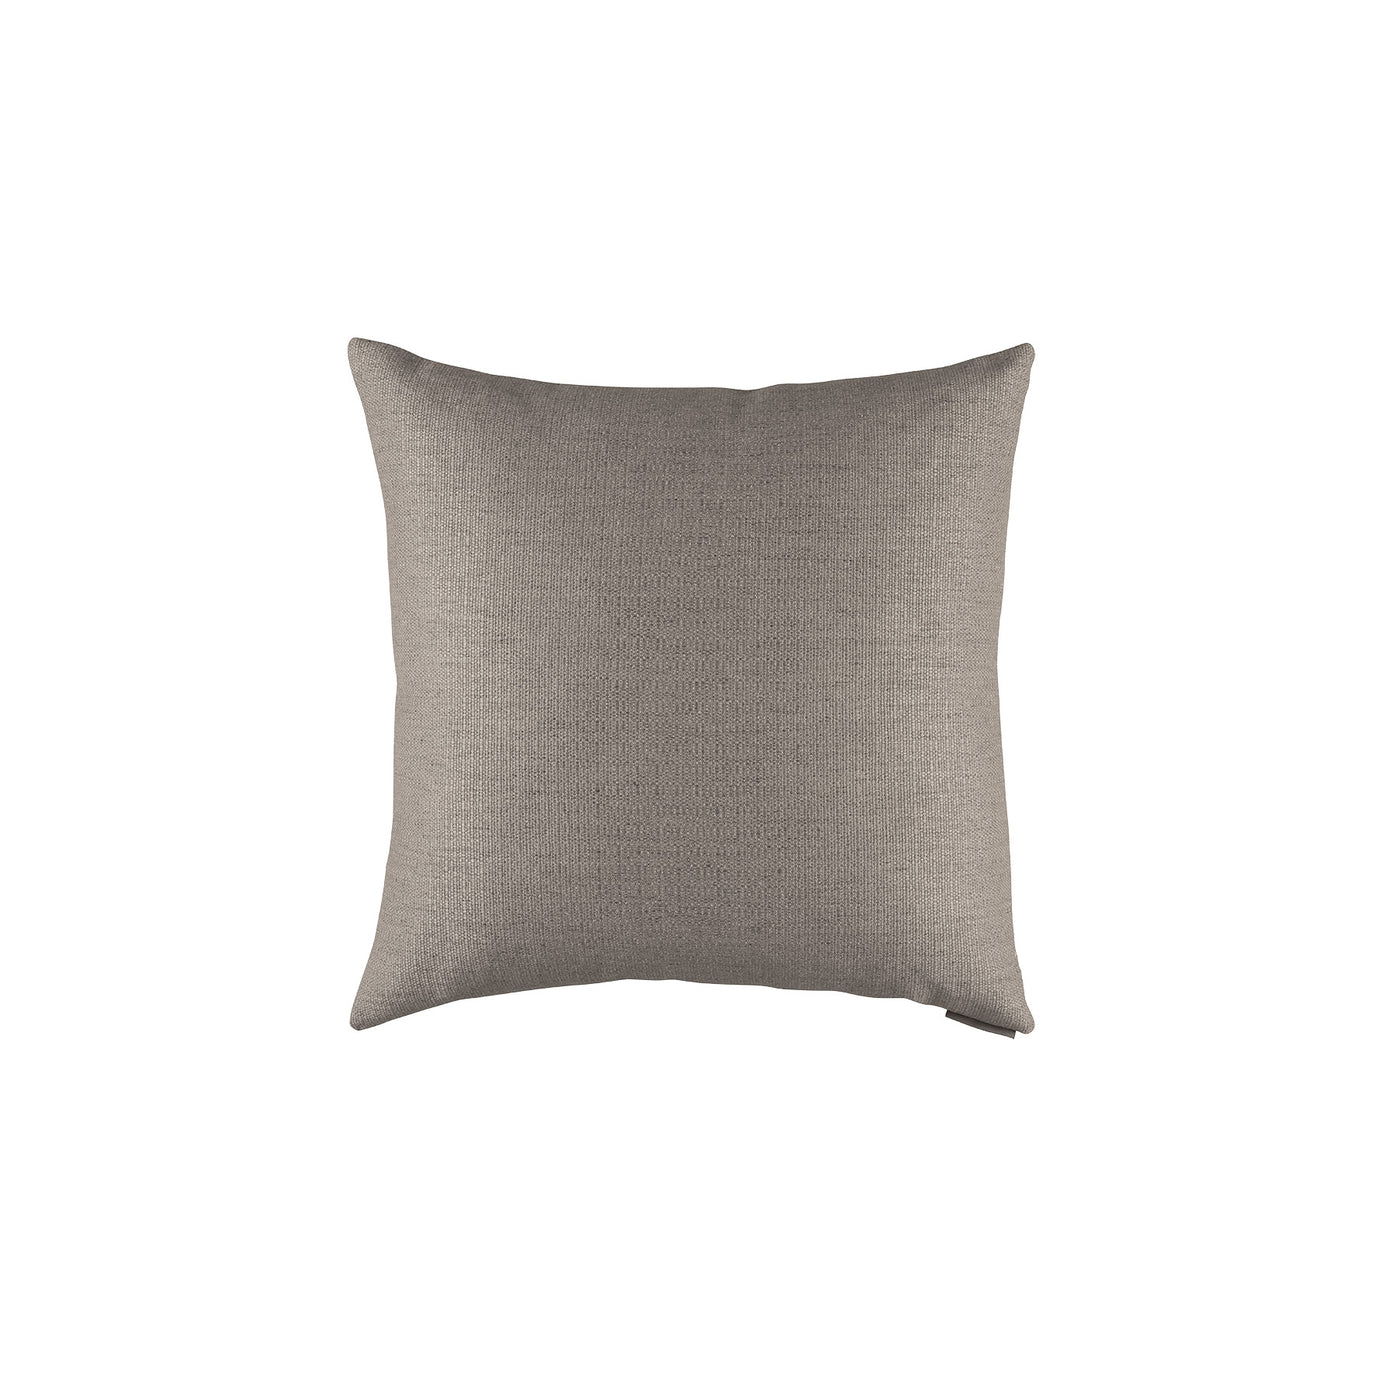 Harper Stone Small Square Pillow (22x22)